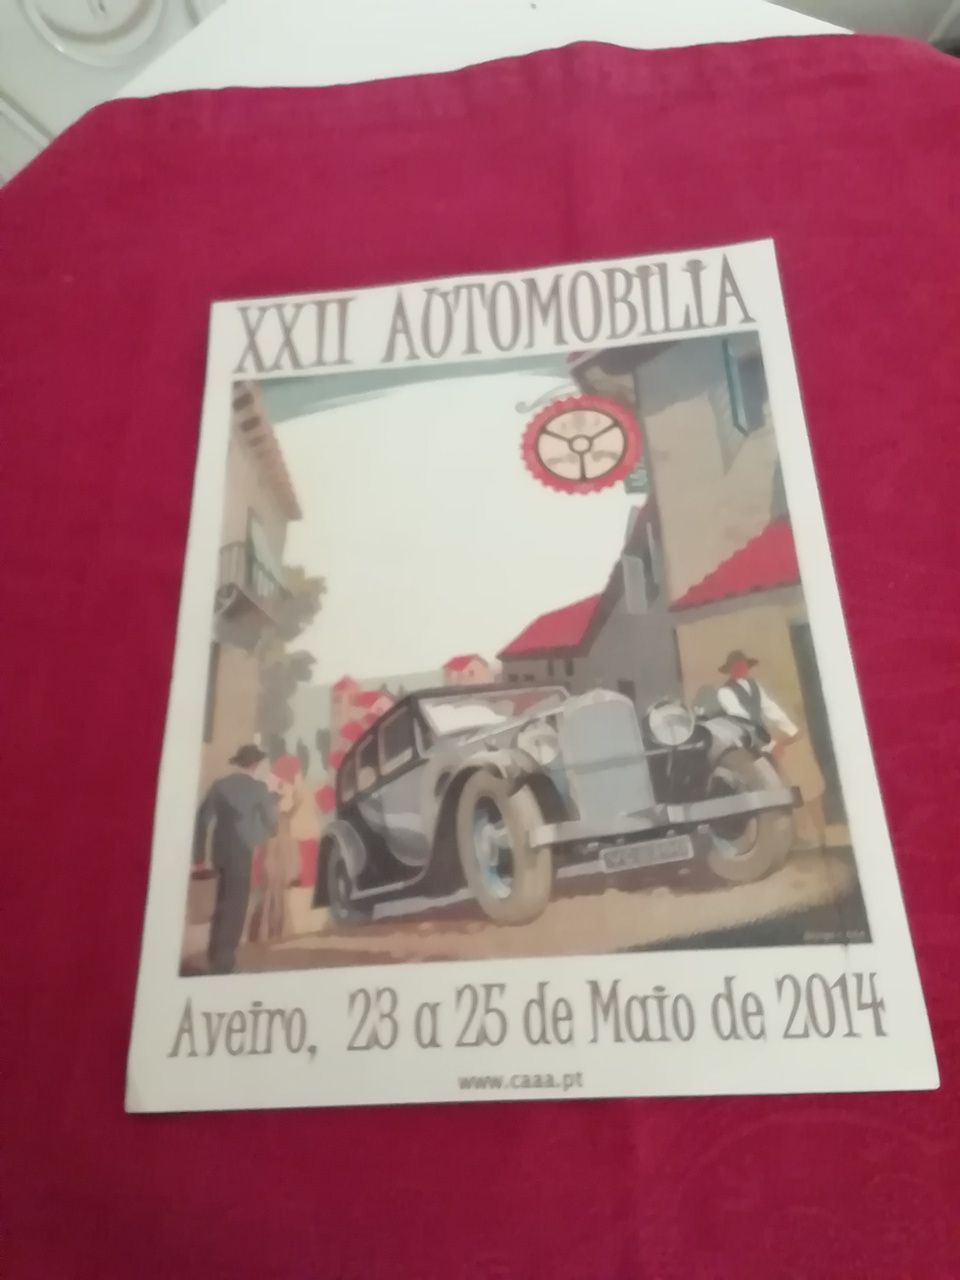 Cartaz da XXII Automobilia Aveiro 2014